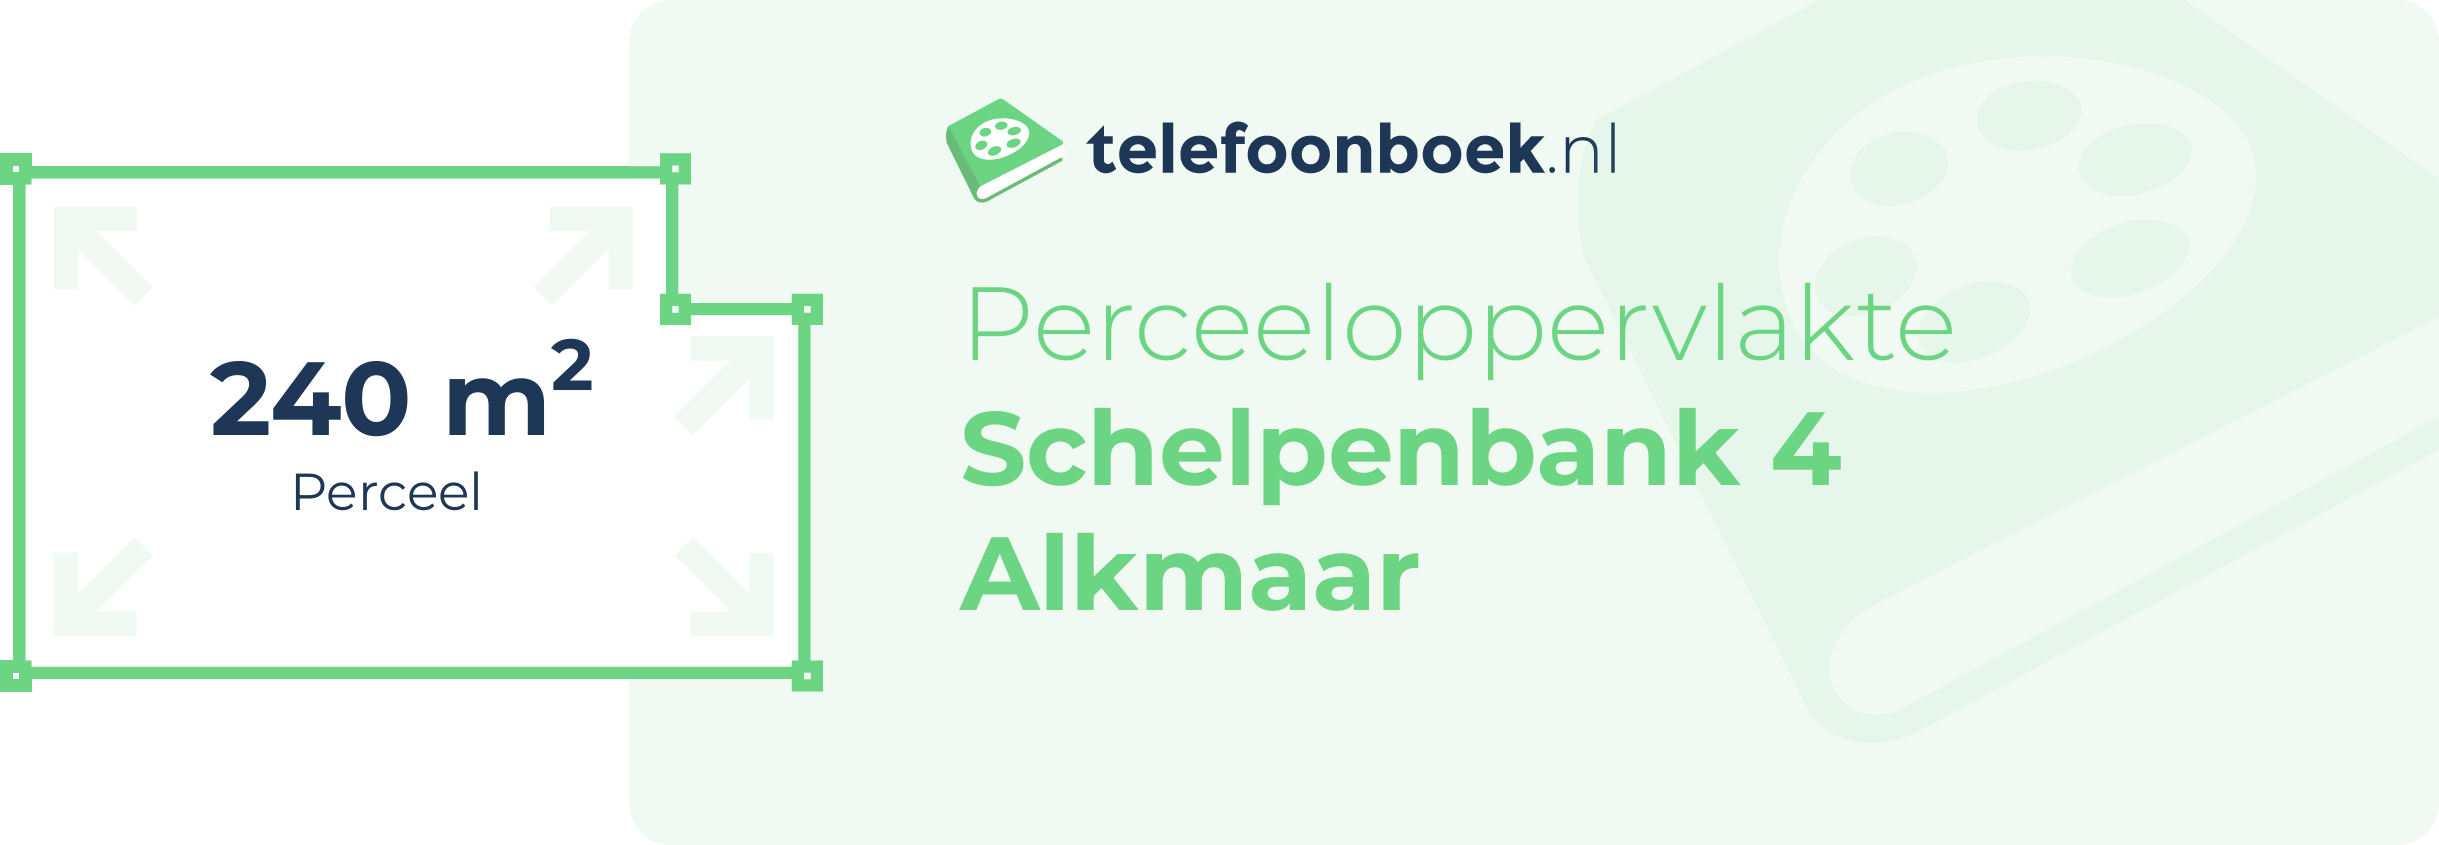 Perceeloppervlakte Schelpenbank 4 Alkmaar